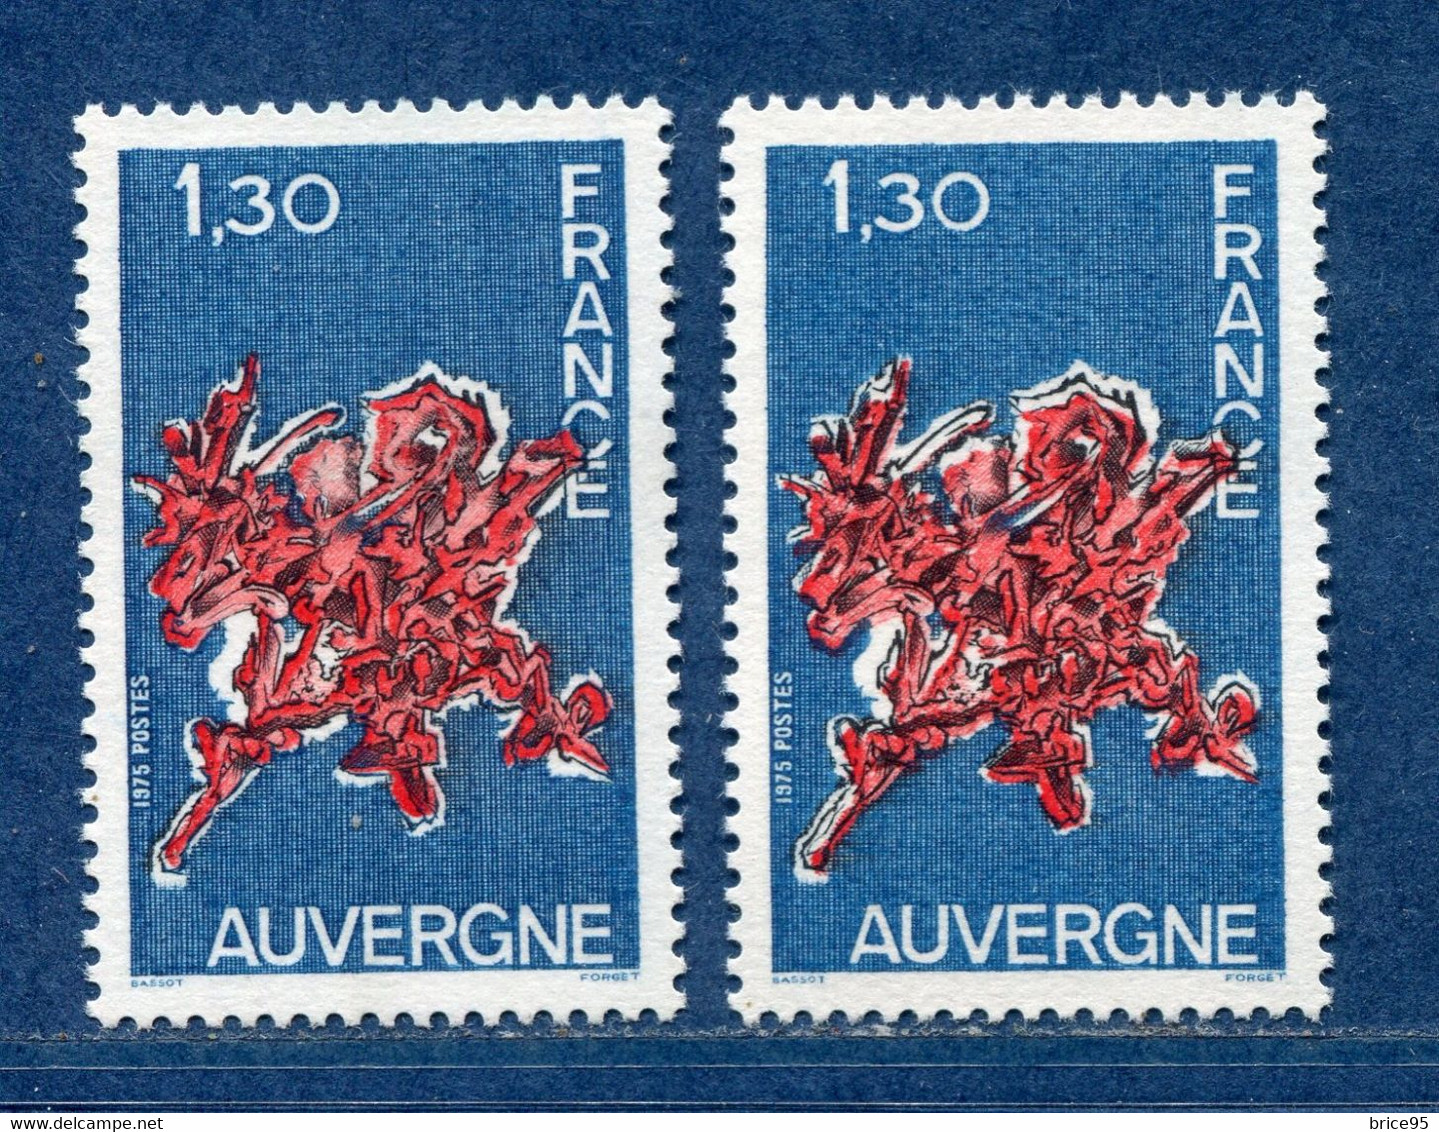 ⭐ France - Variété - YT N° 1850 - Couleurs - Pétouille - Neuf Sans Charnière - 1975 ⭐ - Ungebraucht